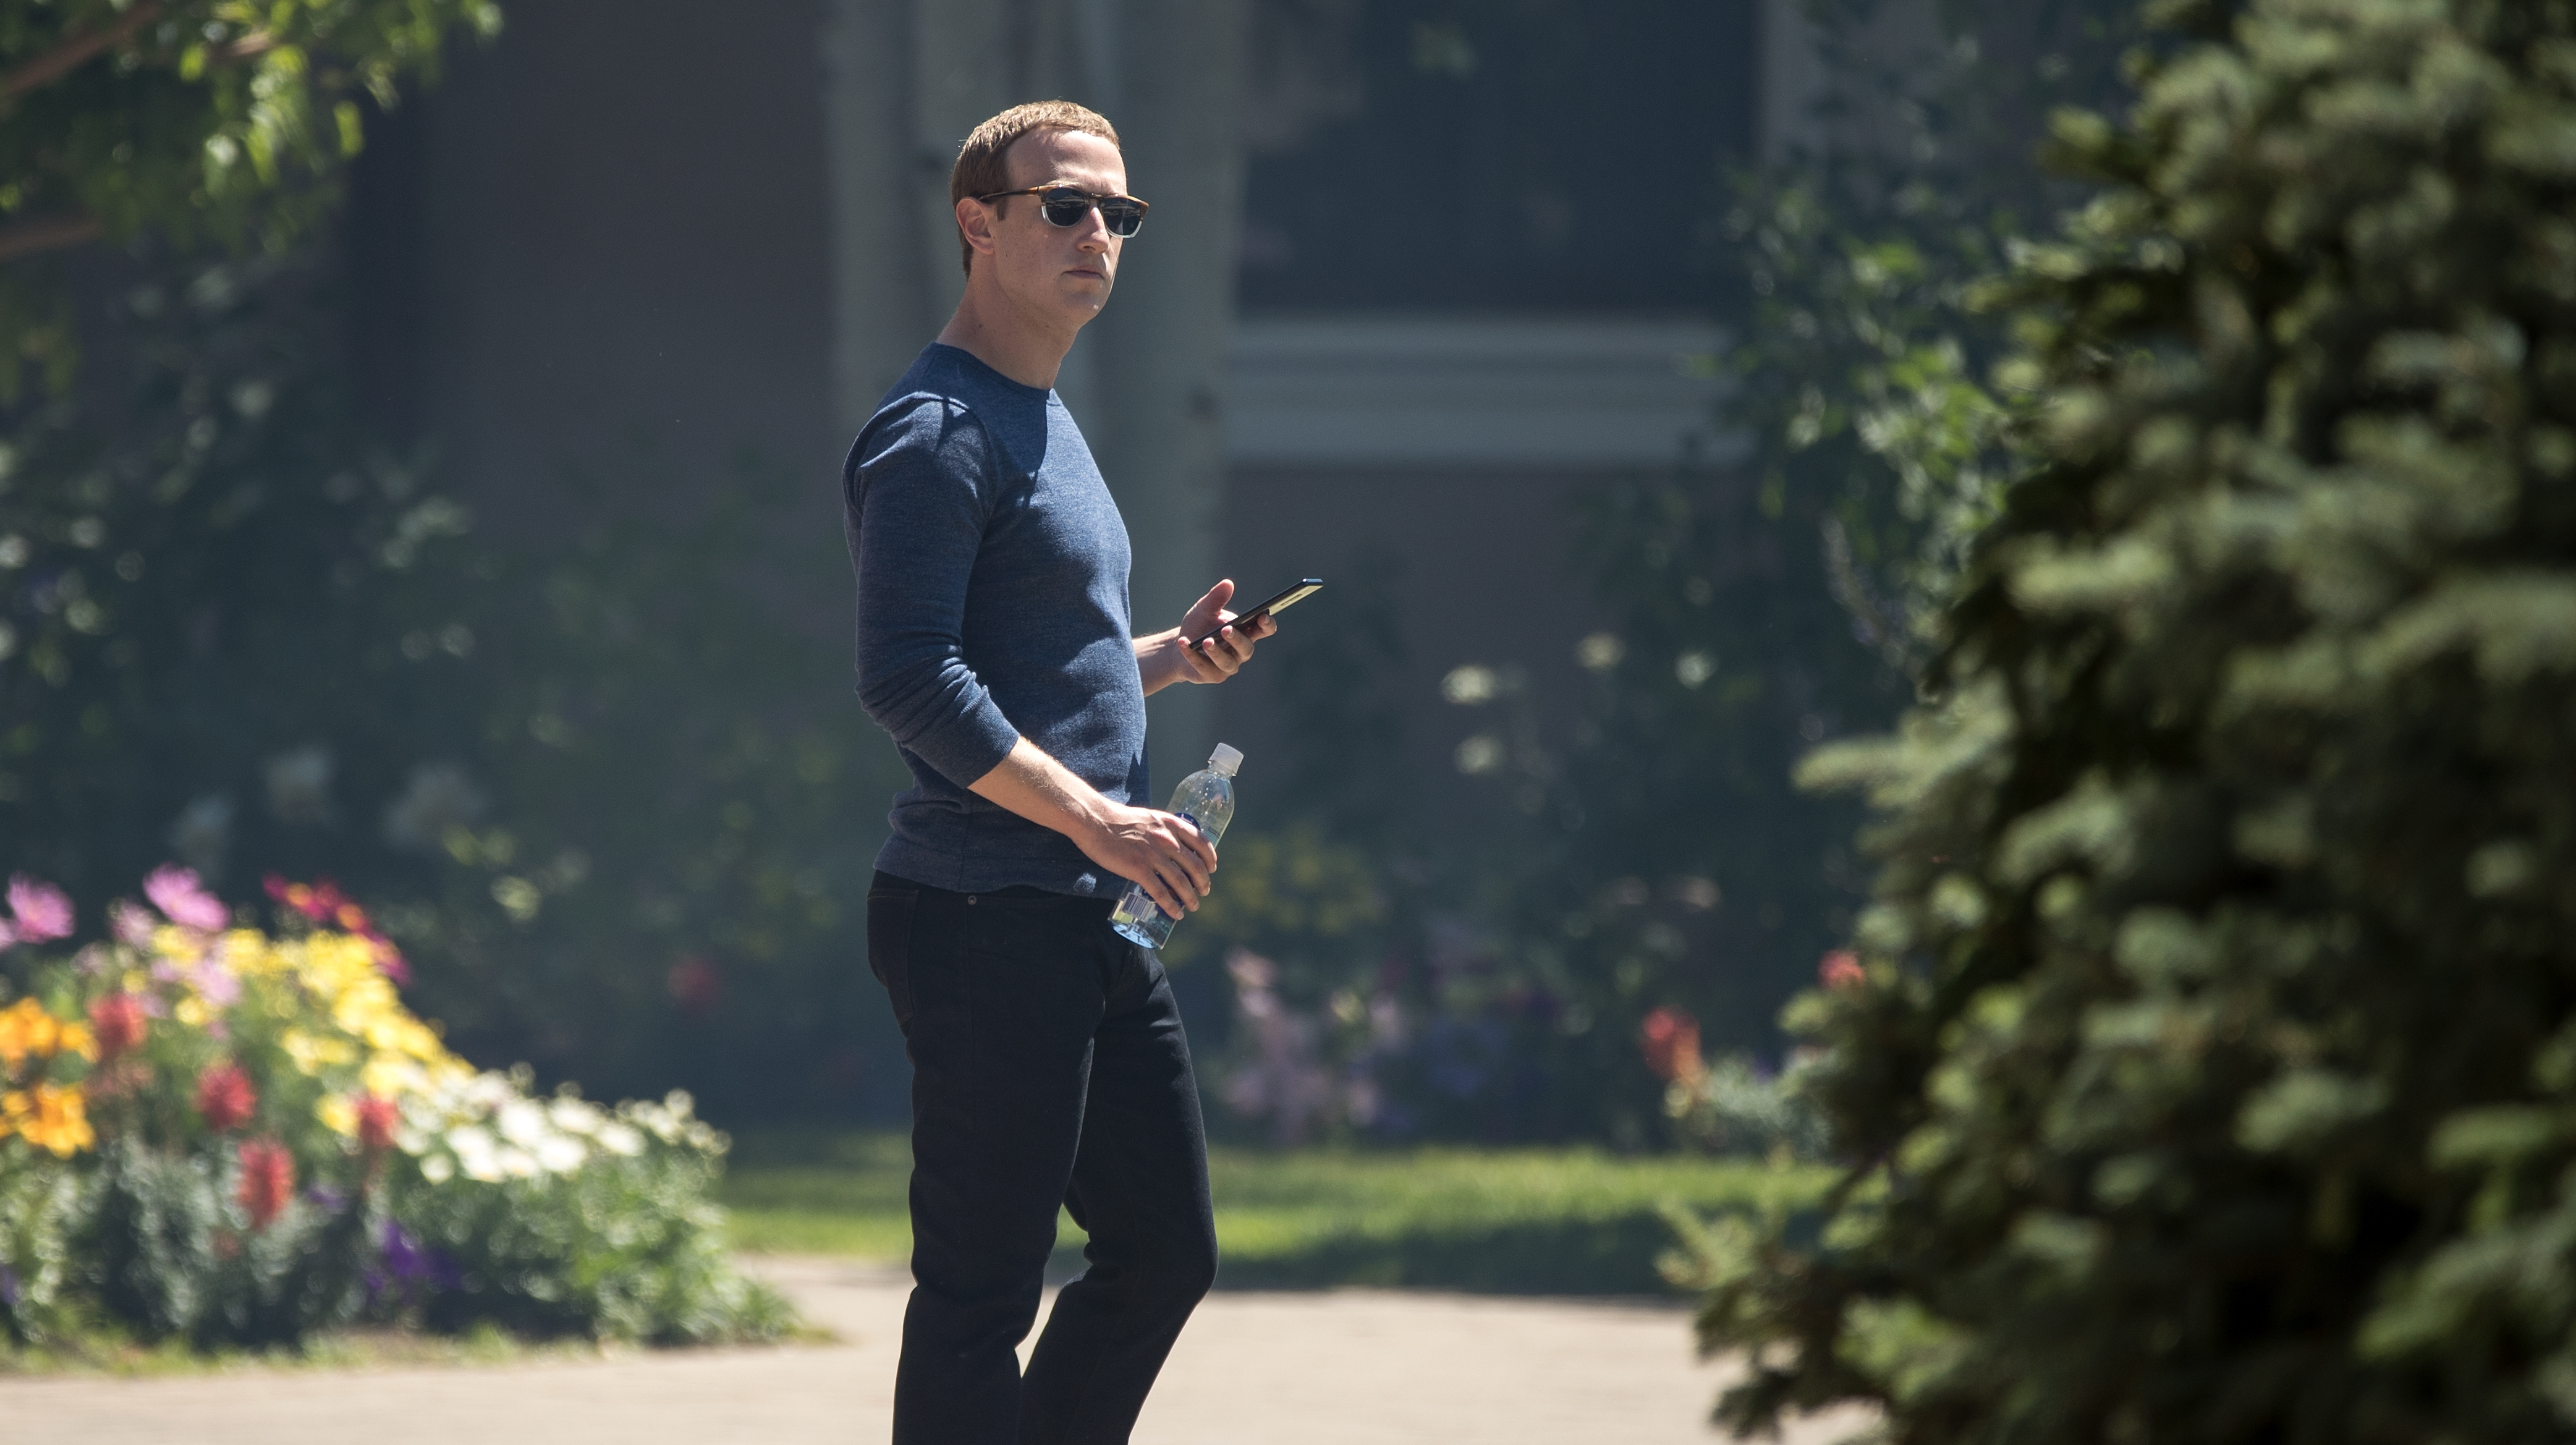 Mark Zuckerberg, CEO do Facebook, em um ambiente externo. Ele usa óculos escuros e tem uma garrafa d'água em uma das mãos e um smartphone na outra.